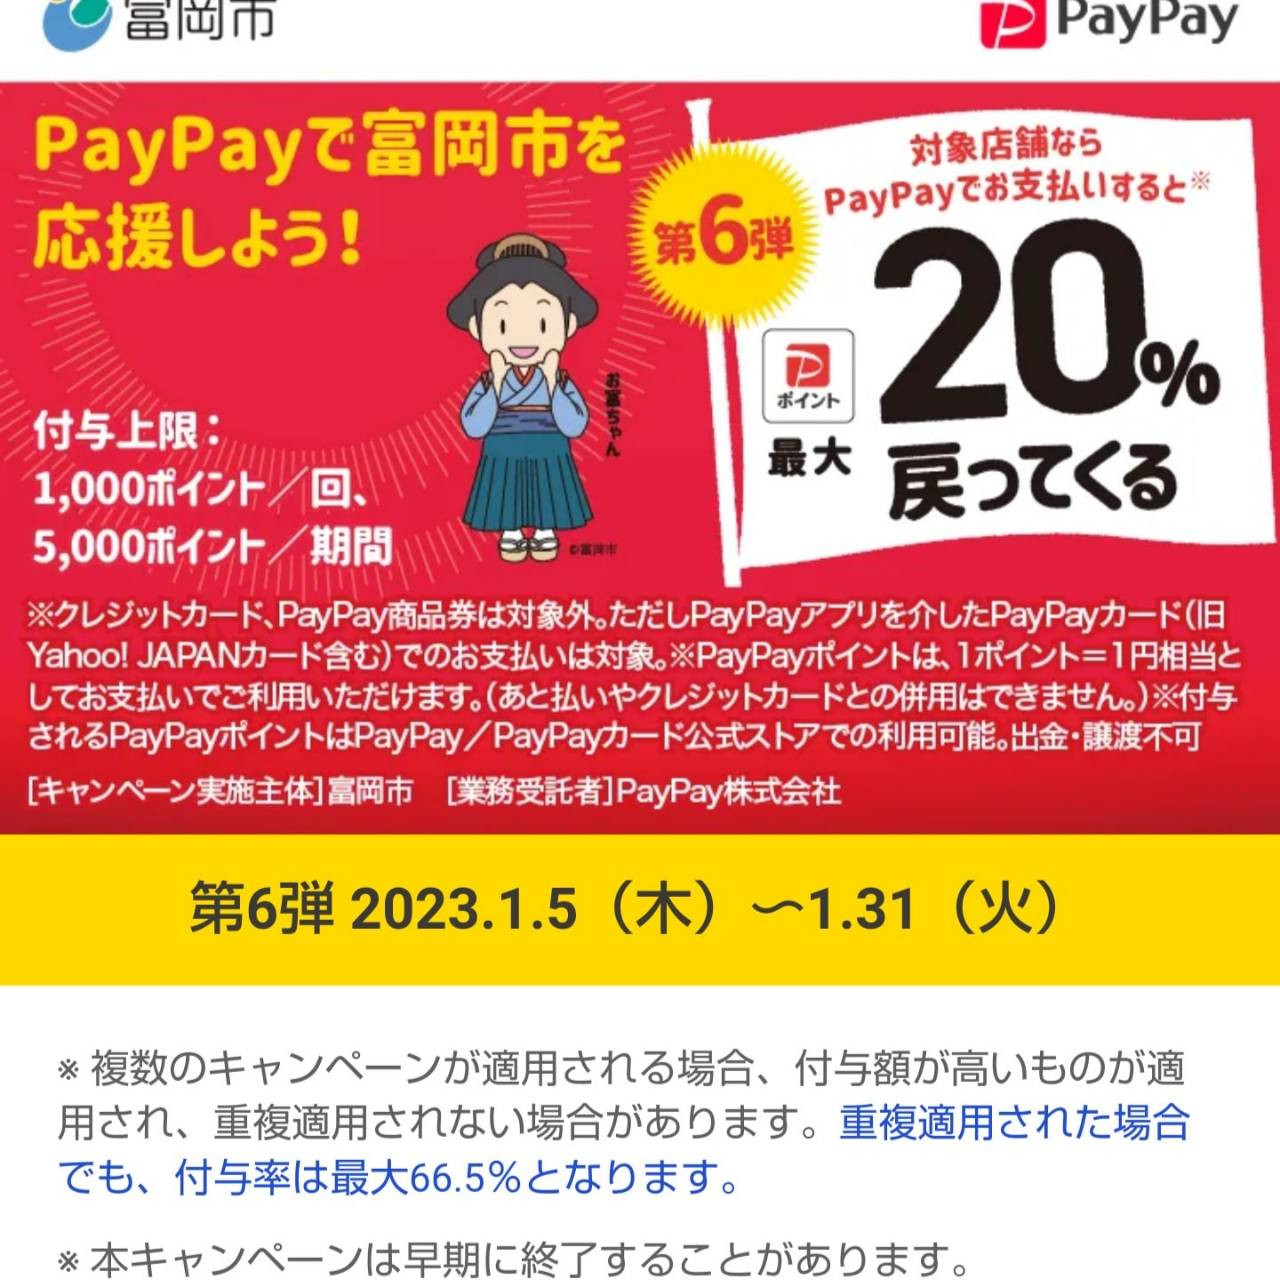 PayPay20％ポイントバックはじまりました。